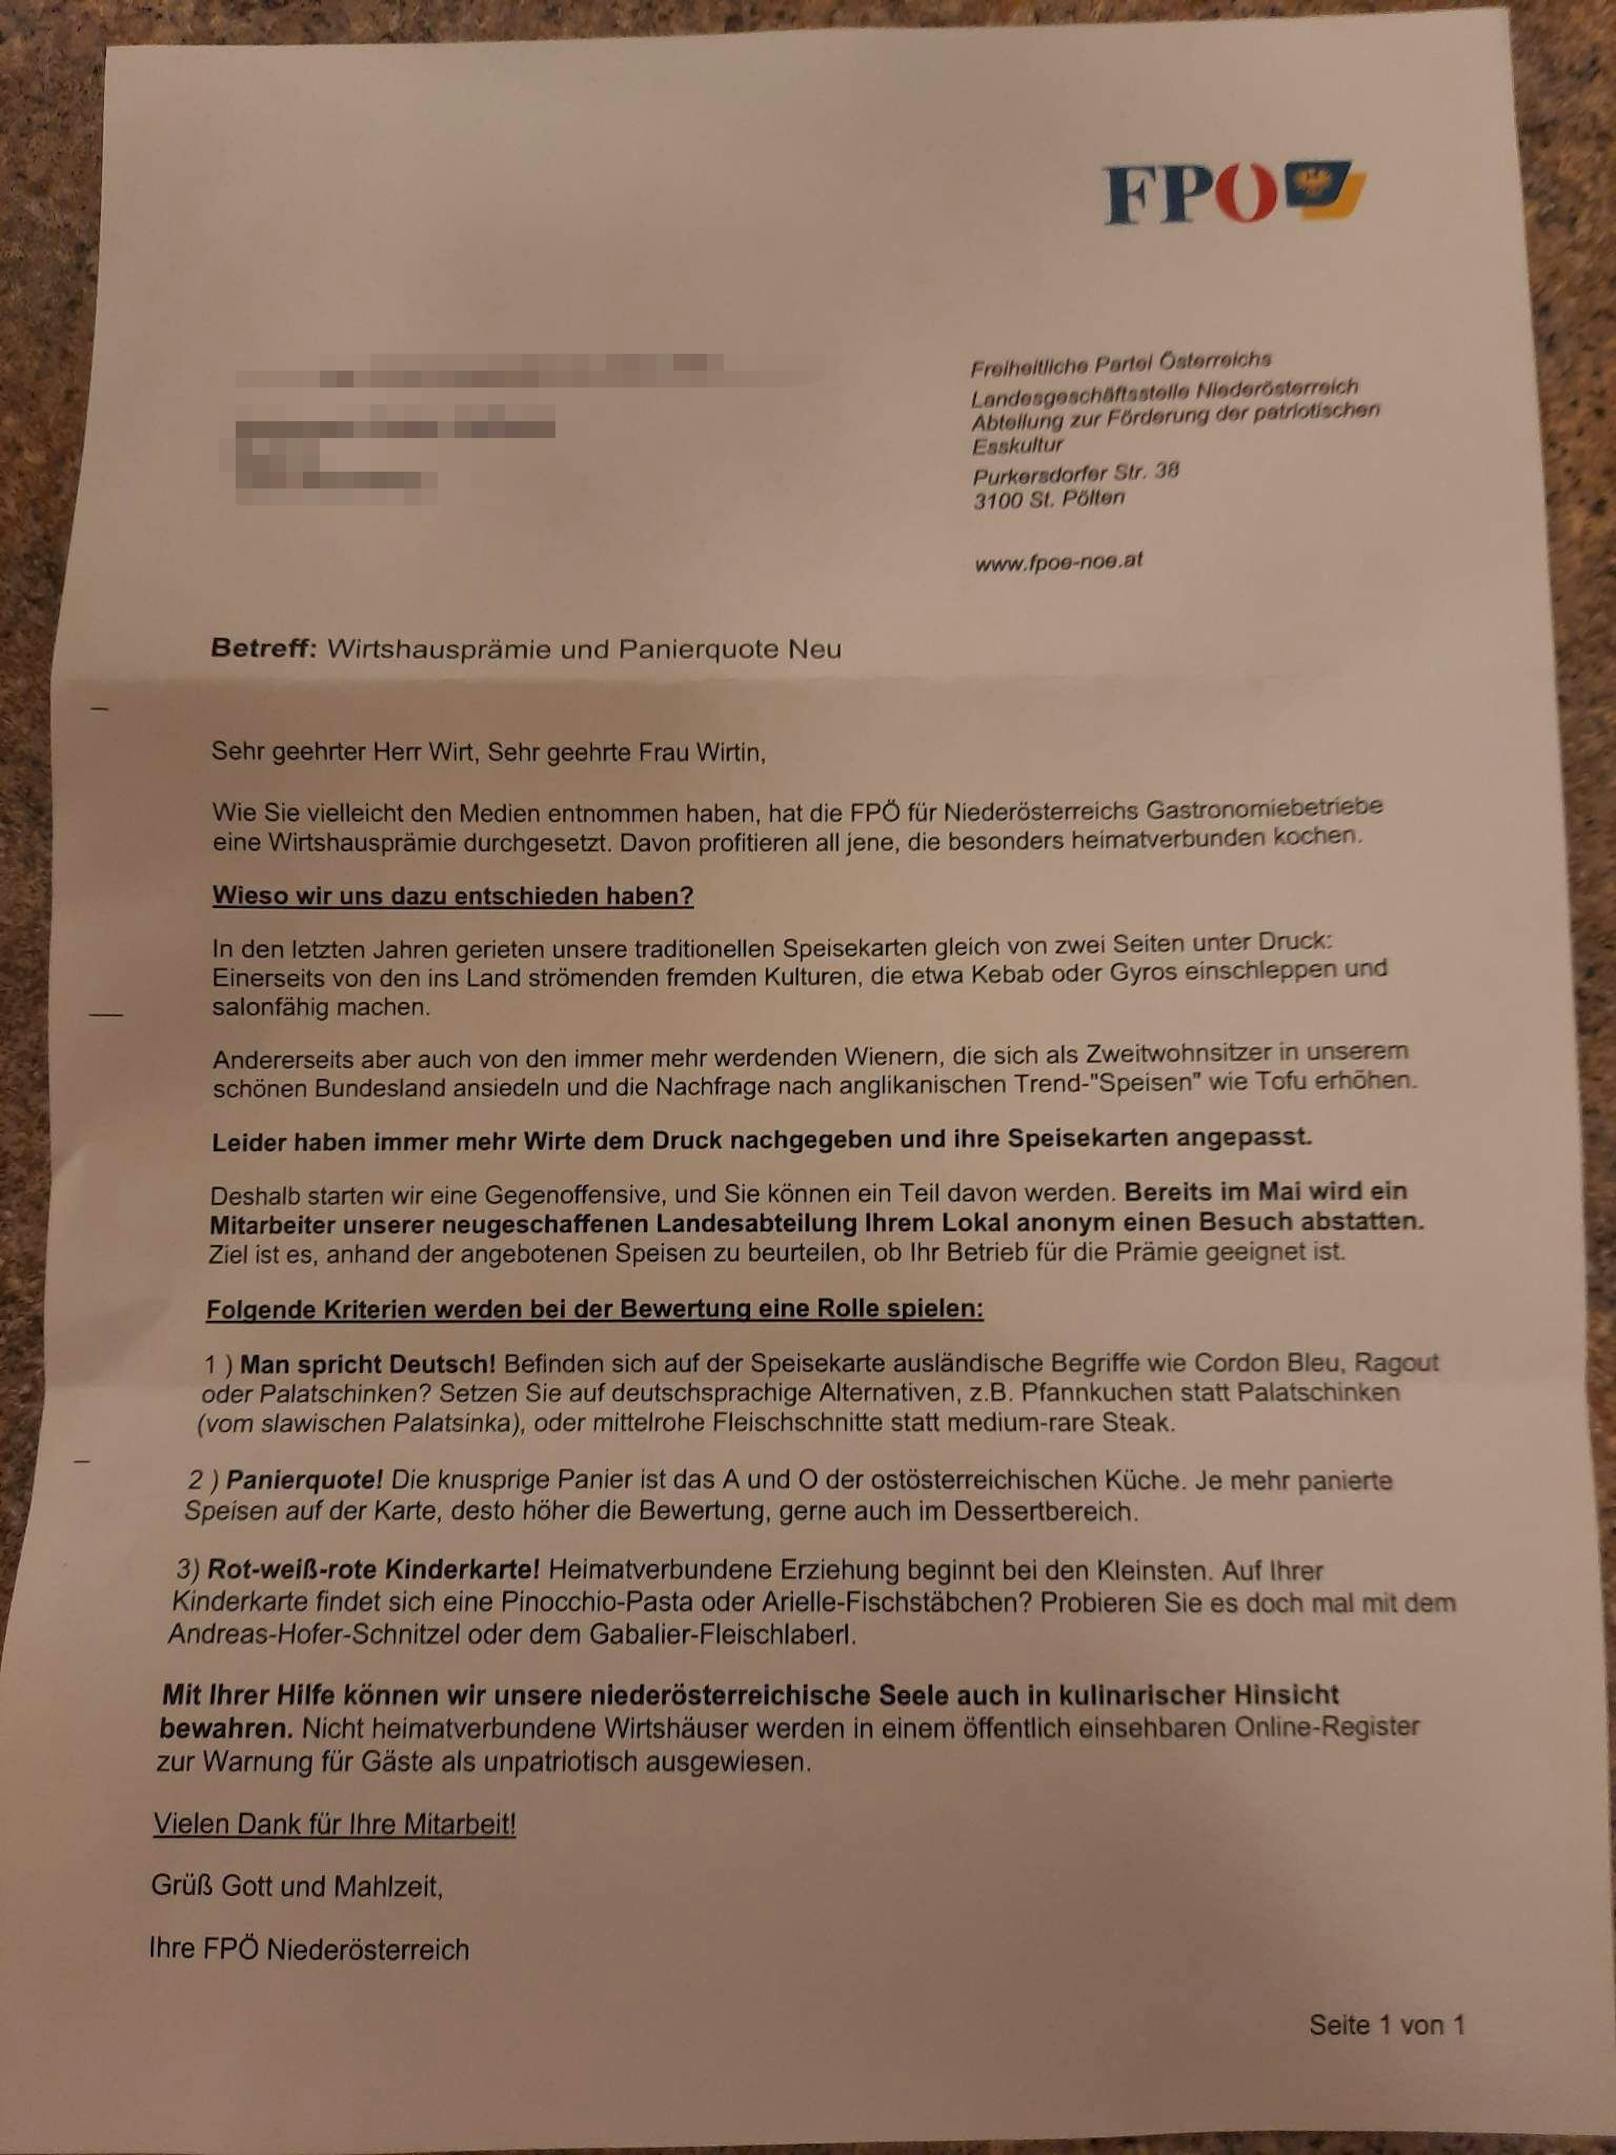 So sieht der FPÖ-Fake-Brief aus.